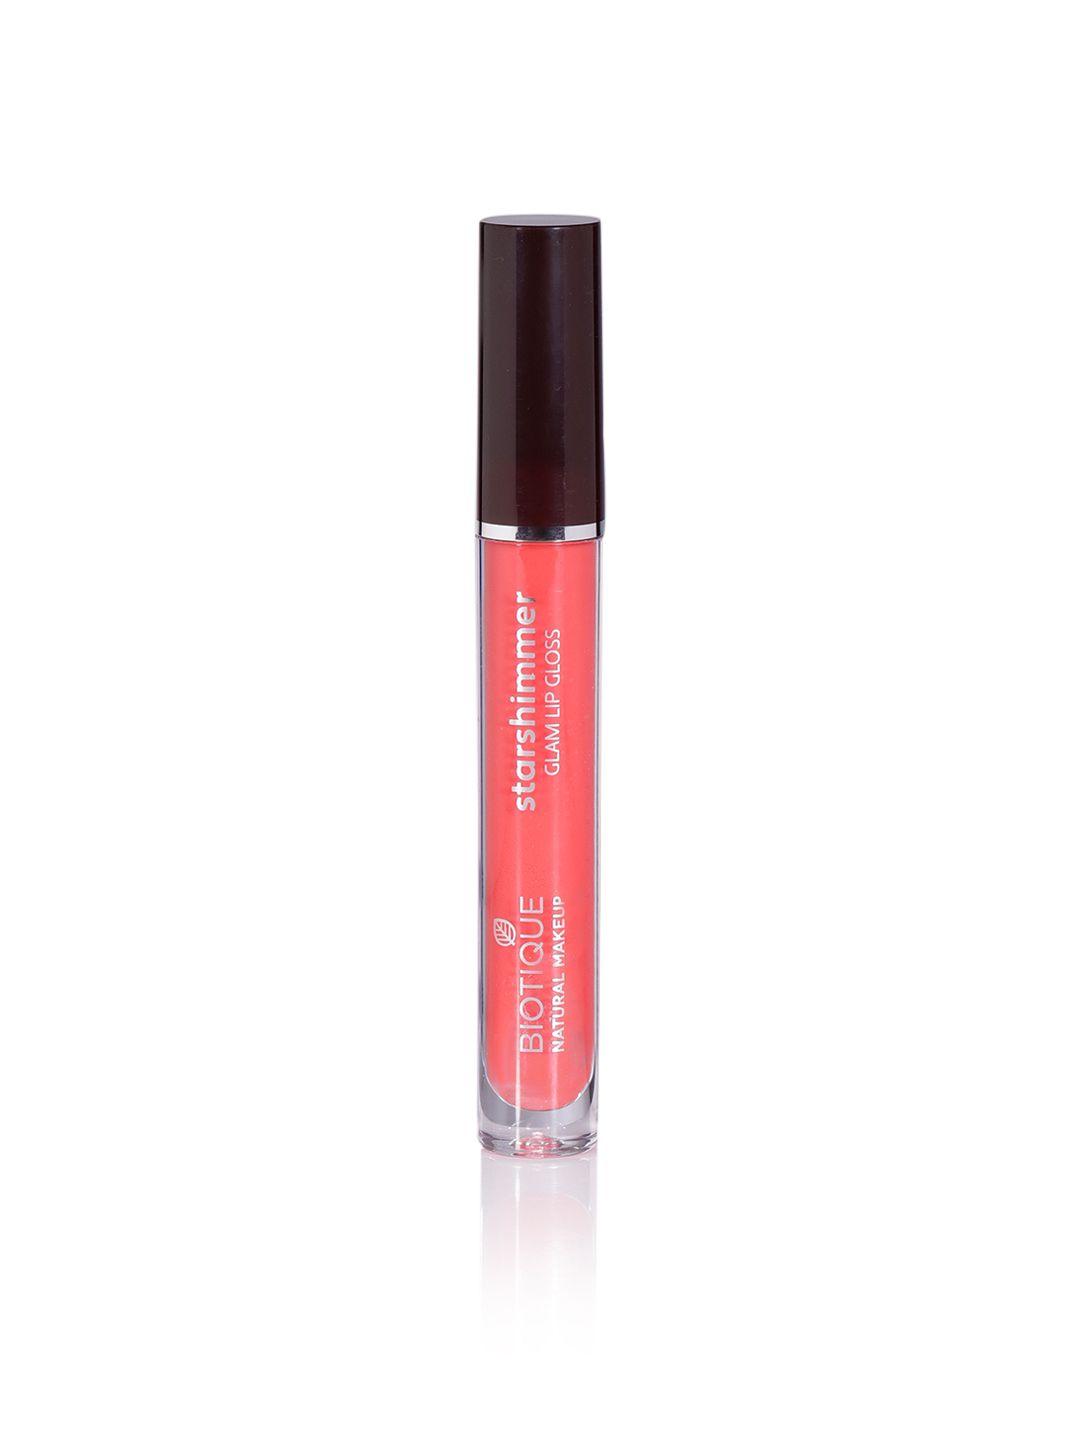 biotique natural makeup starshimmer glam lip gloss - heart stopper r319 3.5 ml